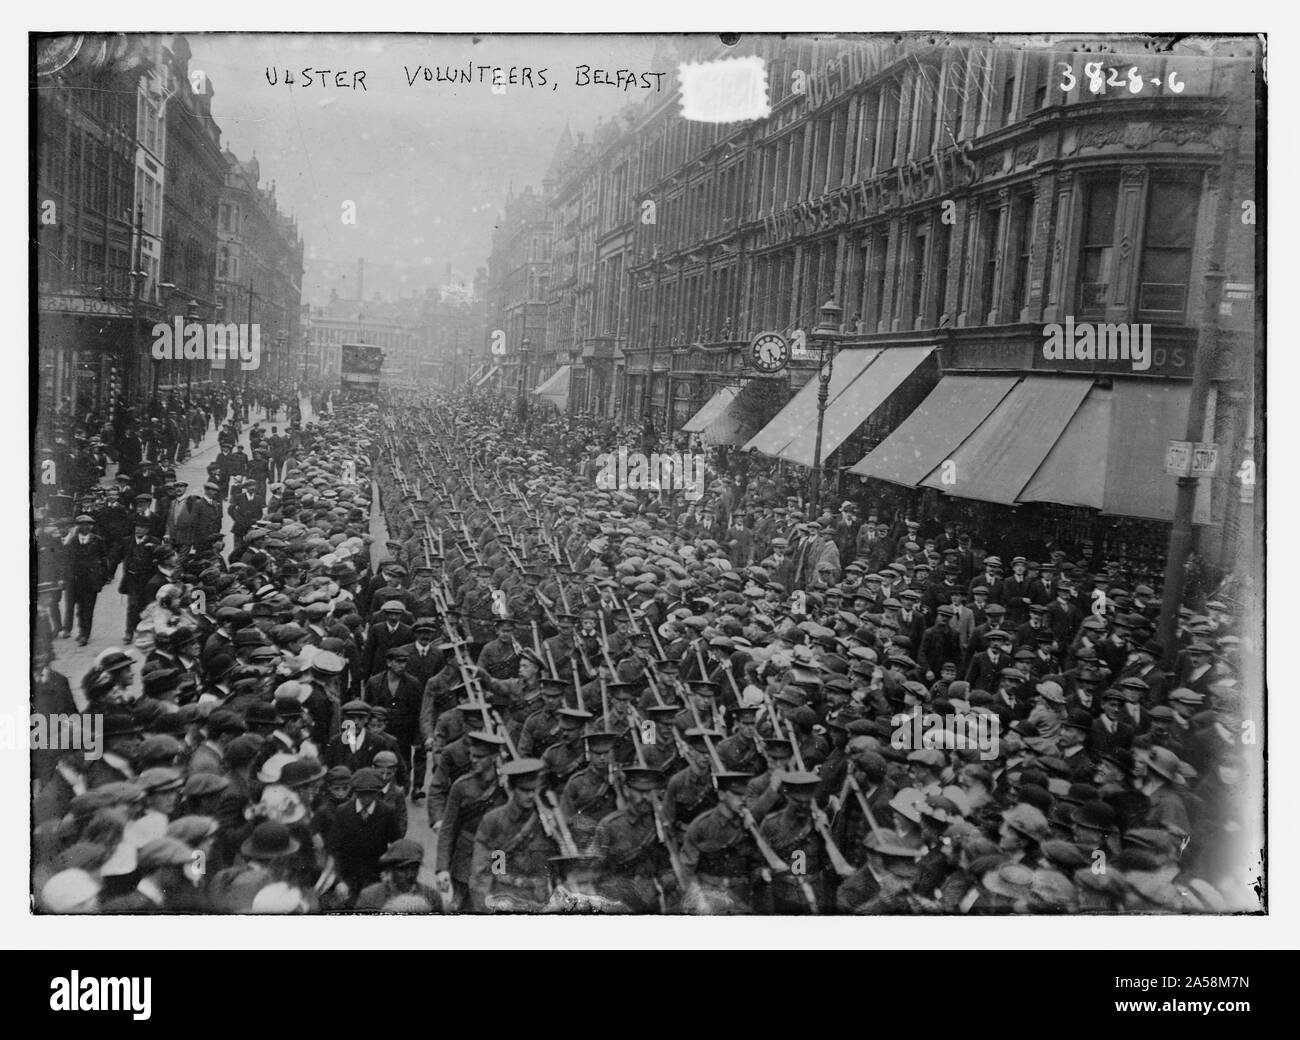 Ulster Volunteers, Belfast Stock Photo